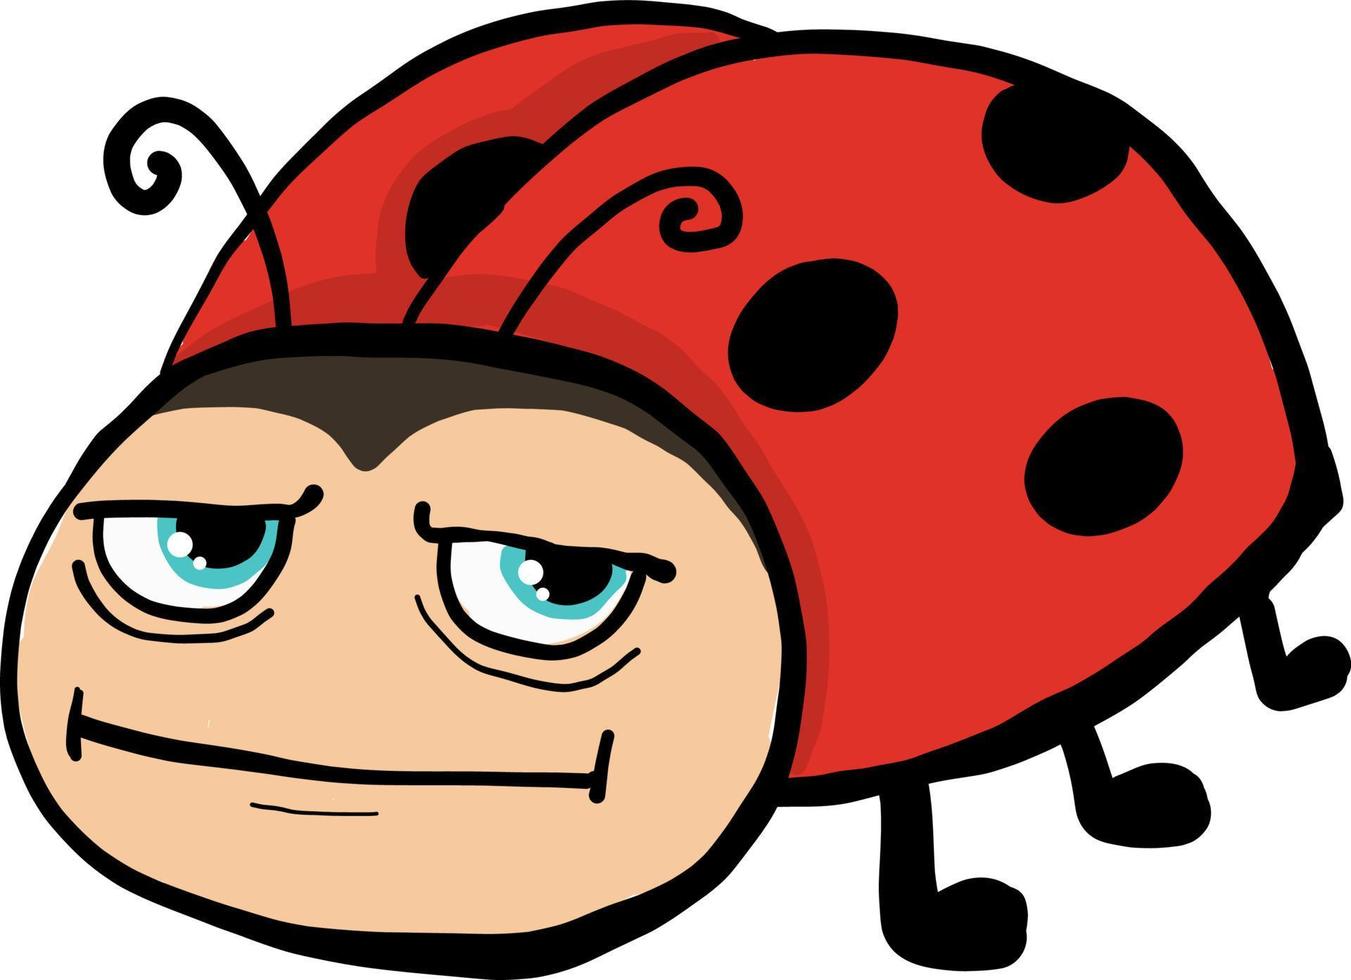 Angry ladybug , illustration, vector on white background